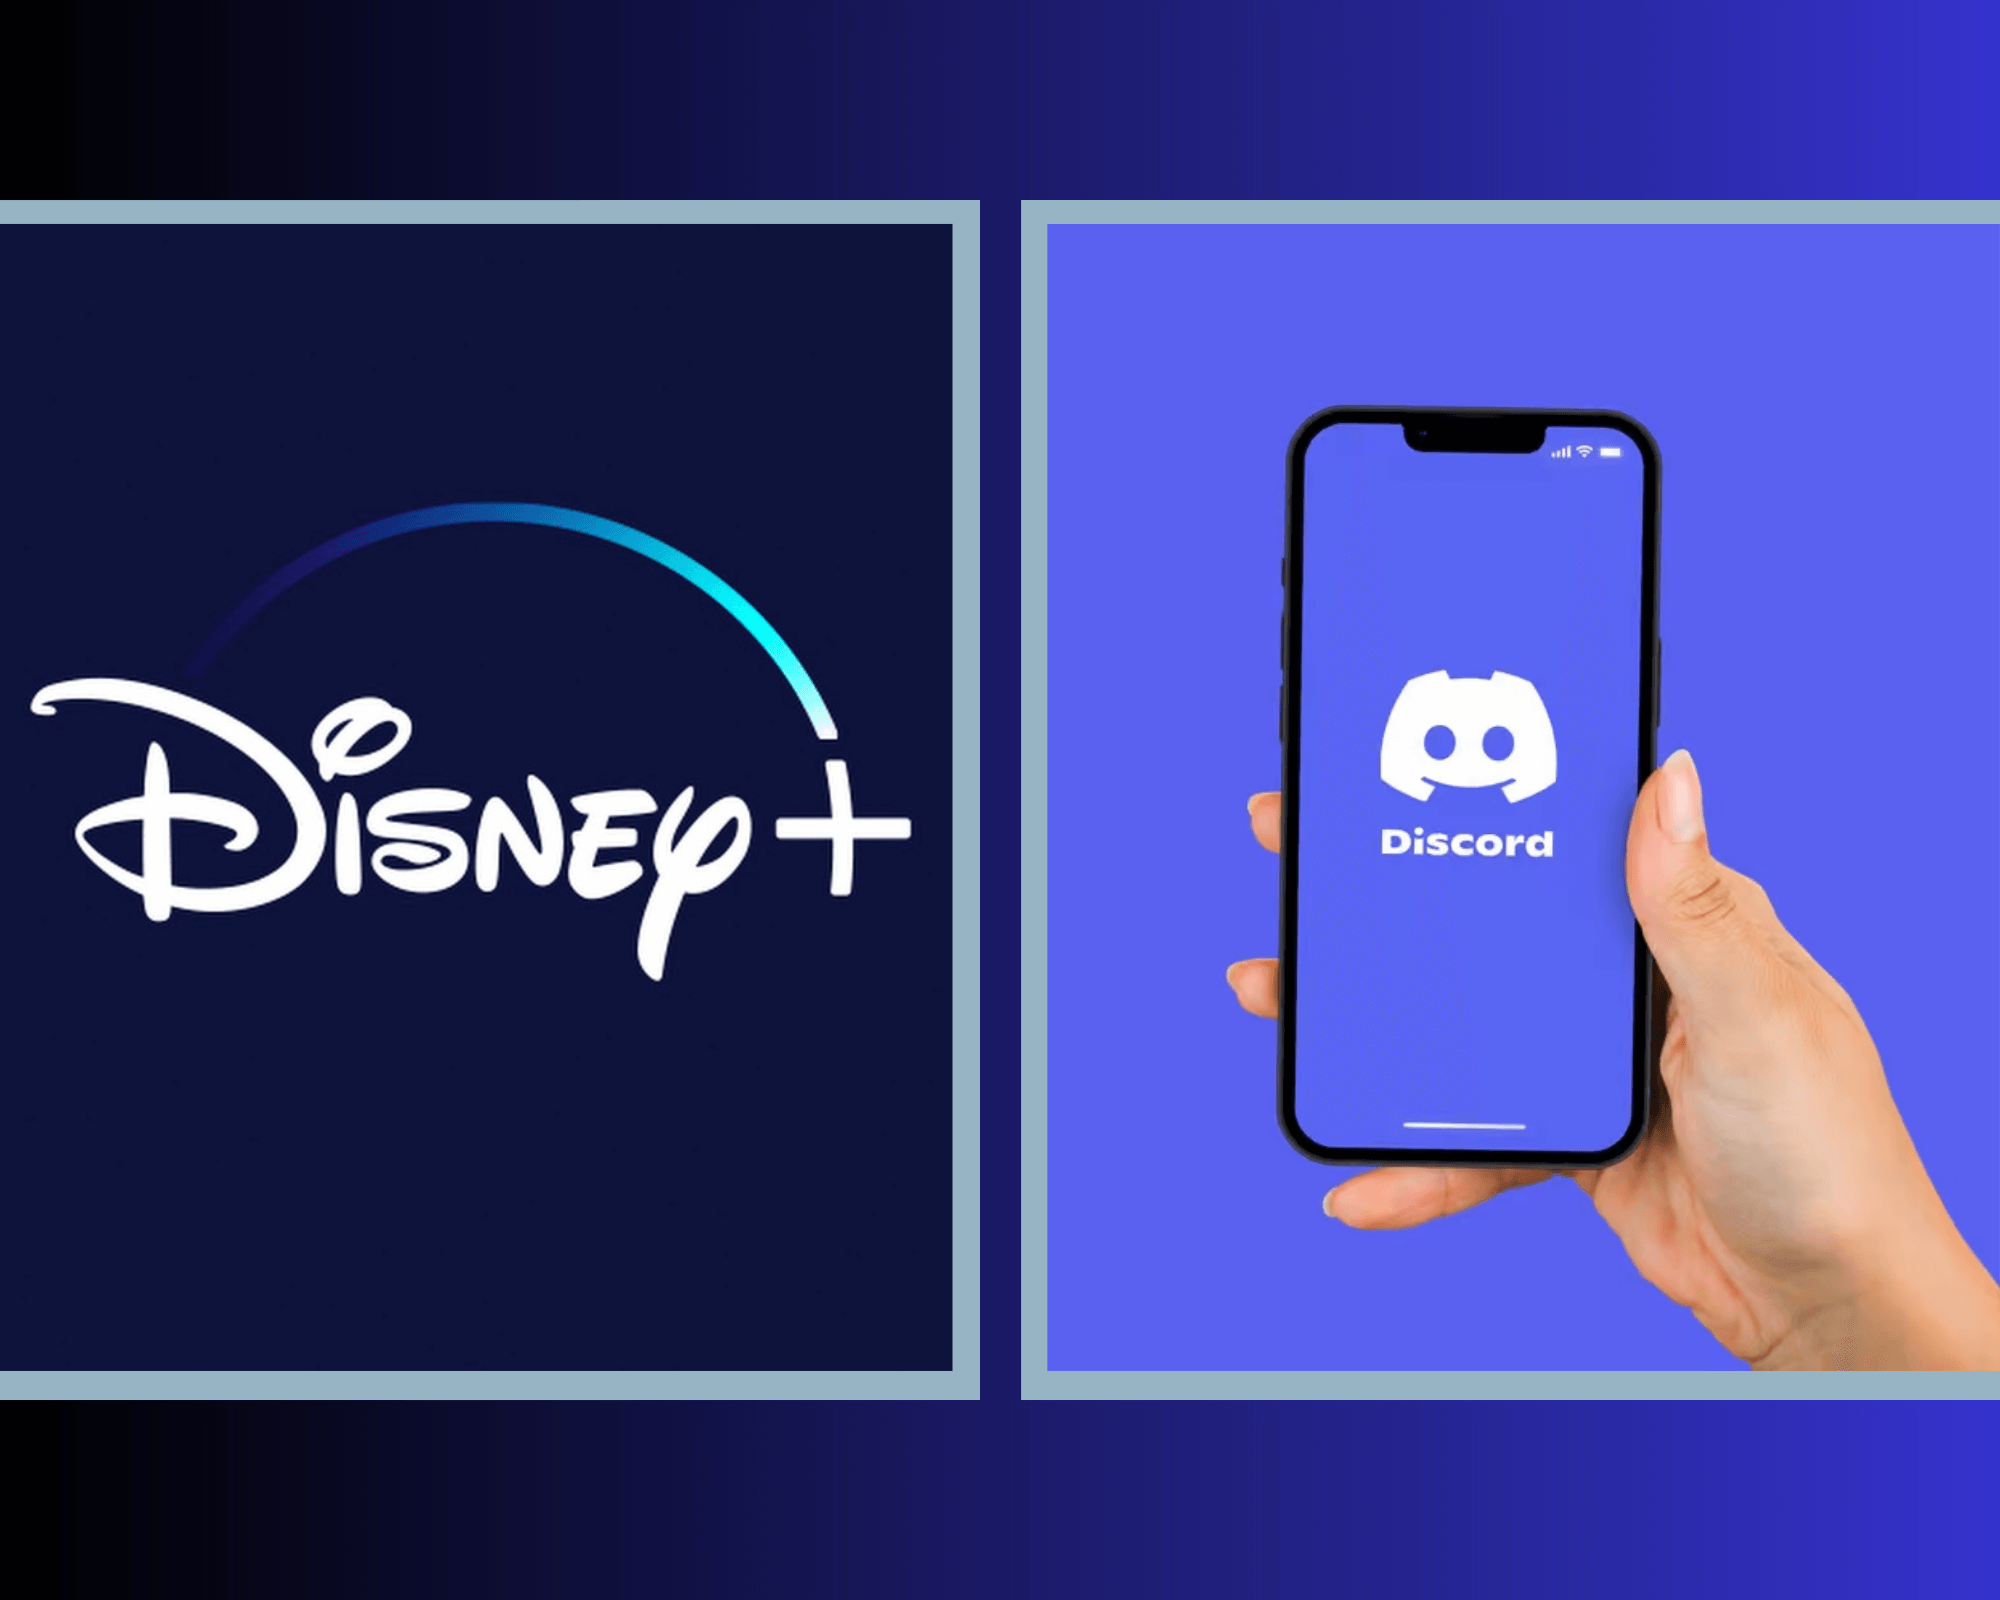 How To Stream Disney Plus On Discord Via Mobile